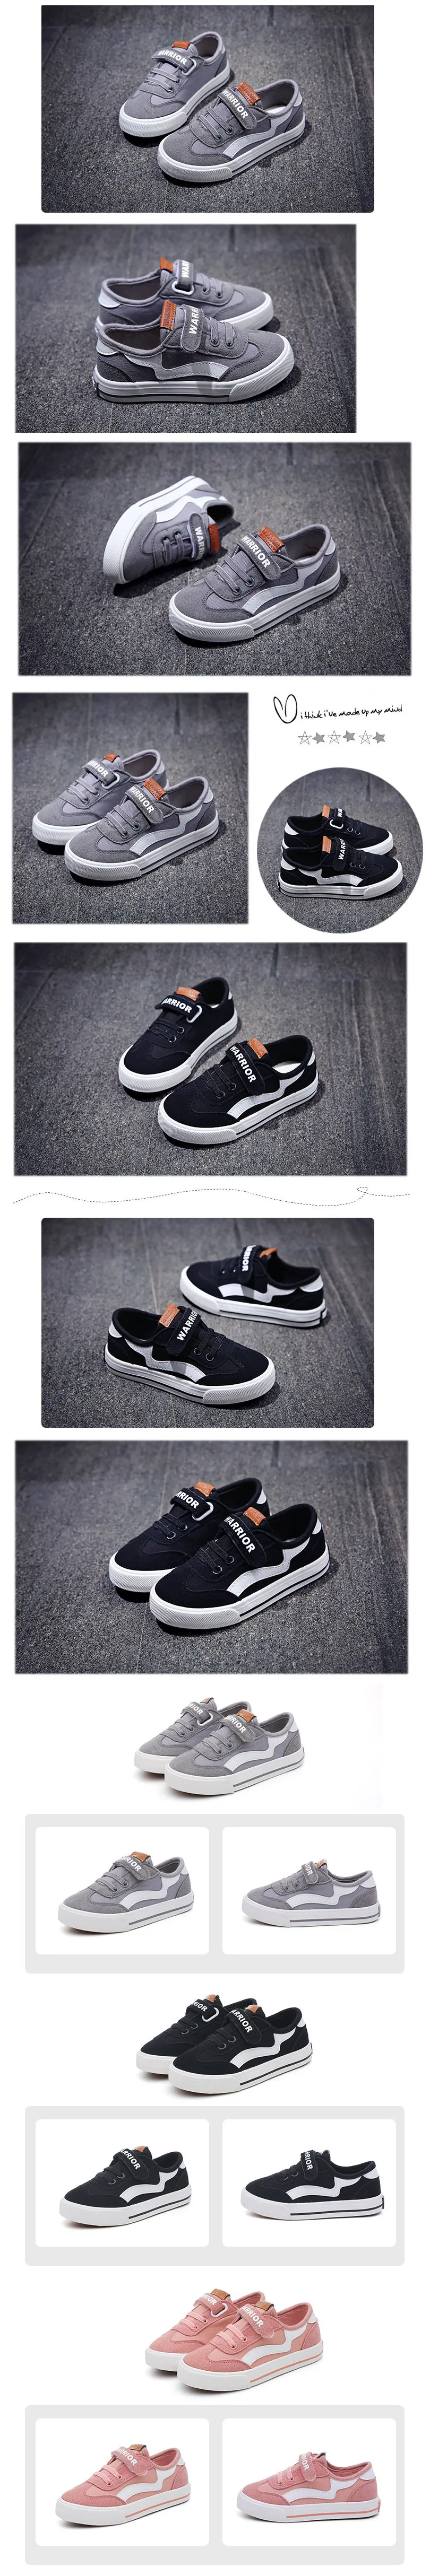 EU23-37, новые брендовые парусиновые детские кроссовки для бега, баскетбола, поля, детские белые кроссовки, обувь для мальчиков и девочек, кроссовки